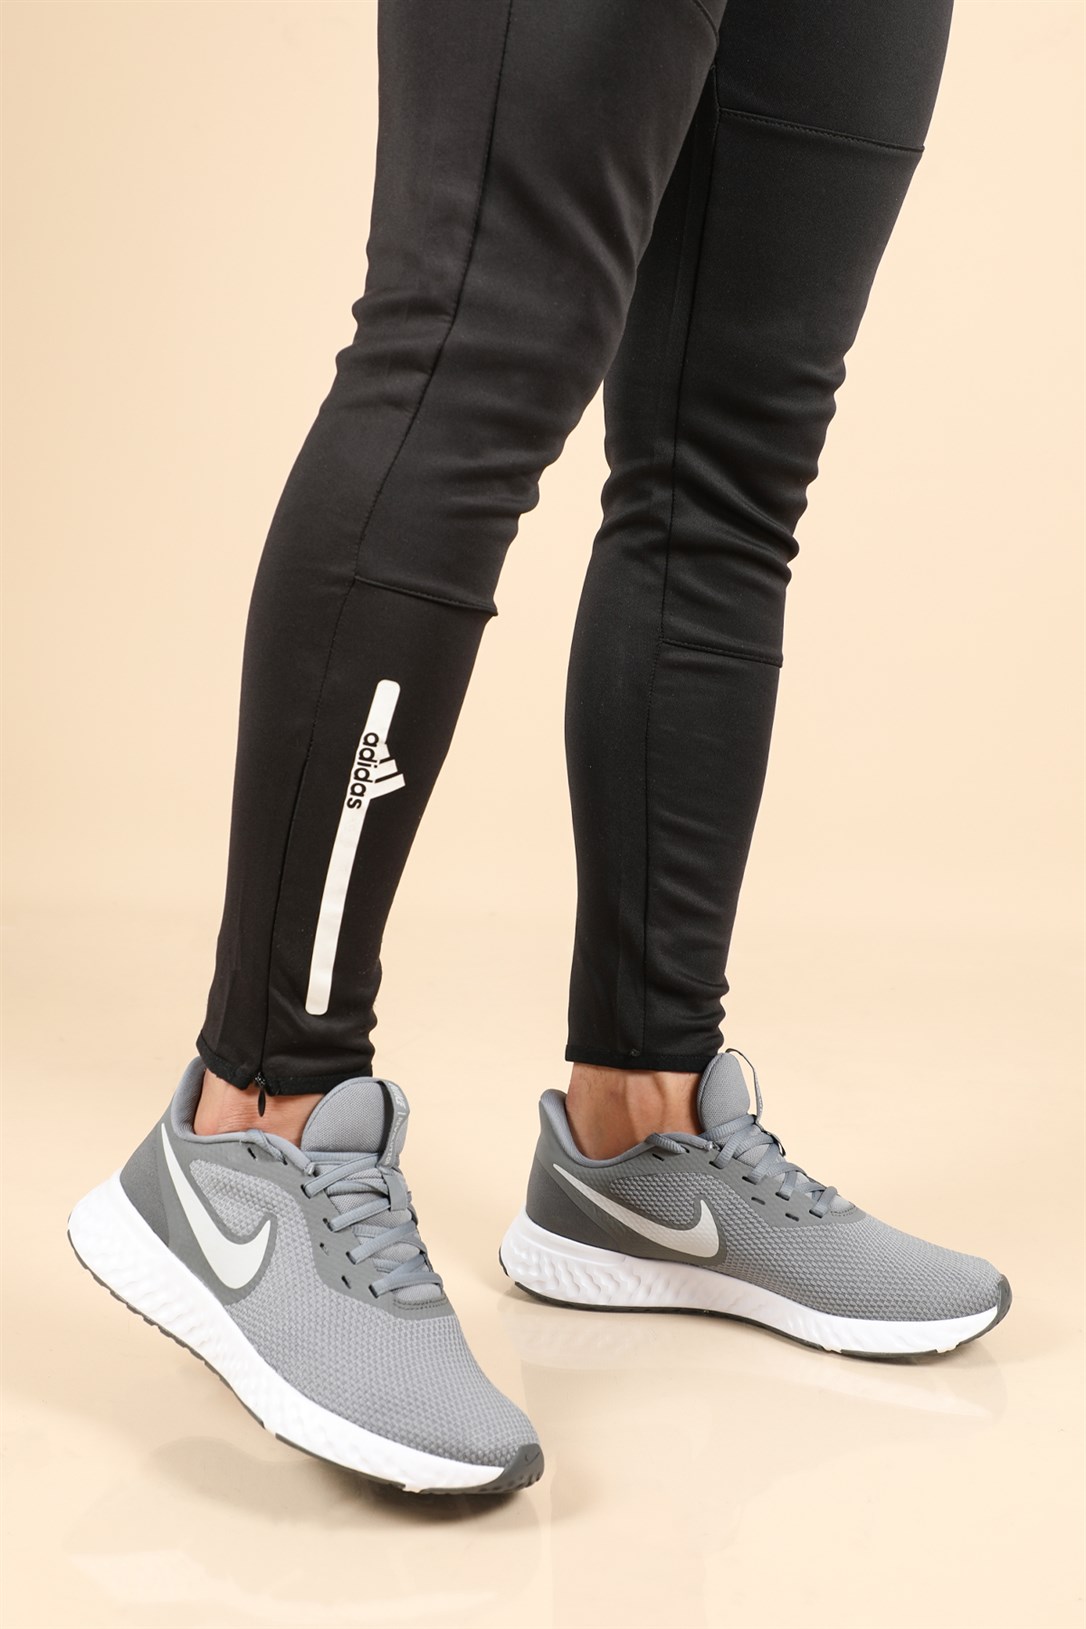 Nike Günlük Koşu Yürüyüş Gri Platin Erkek Spor Ayakkabı BQ3204-005 |  Ayakkabı City